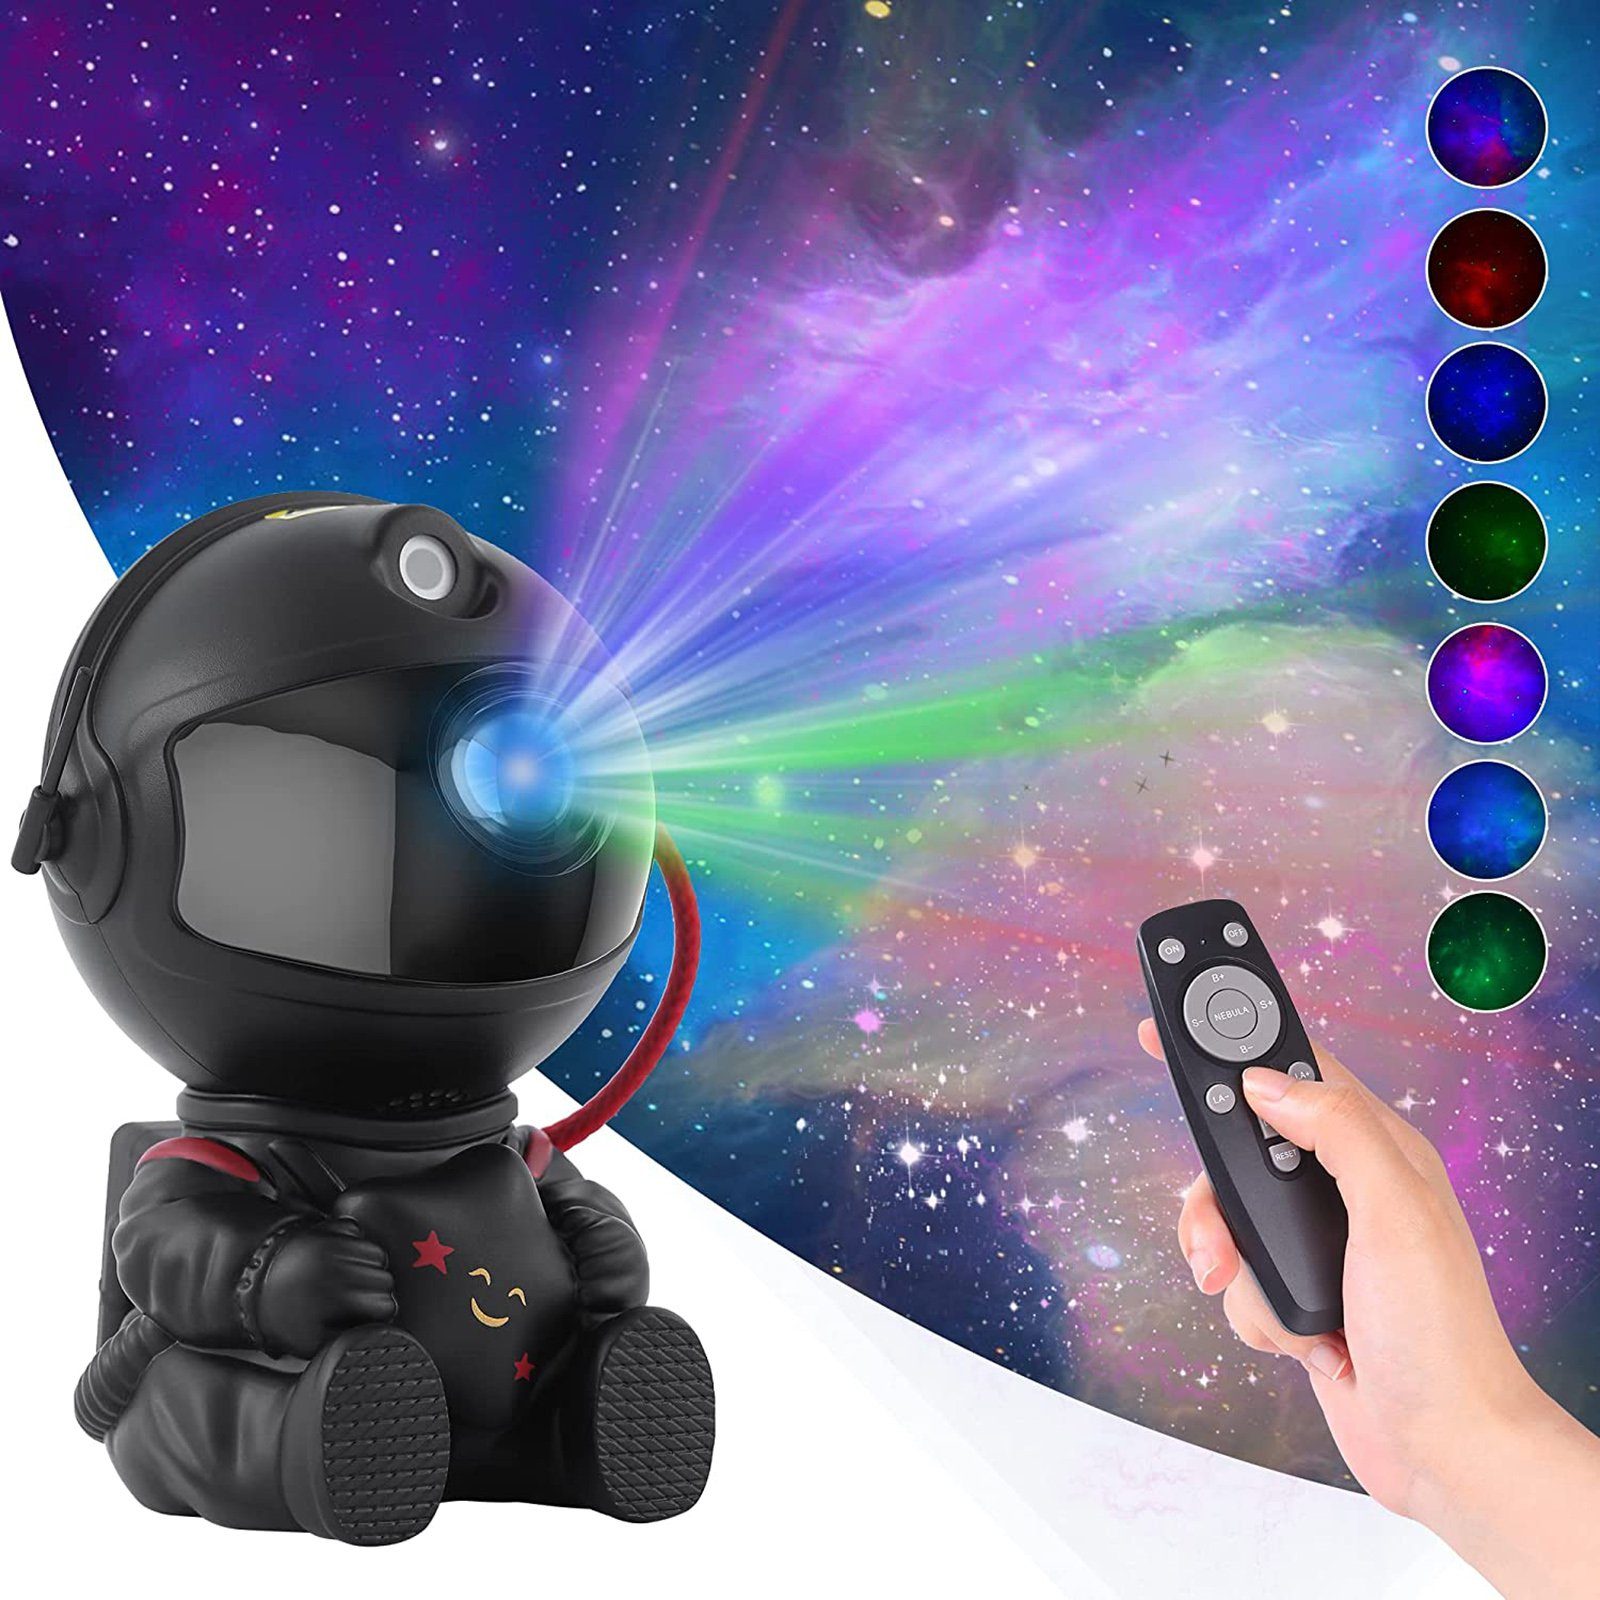 Rosnek LED Nachtlicht Astronaut, Stern-Galaxie-Projektor, für Schlafzimmer Kinderzimmer, Rot, Blau, Grün, Grünes Punktlicht, Heimkino Decke Deko